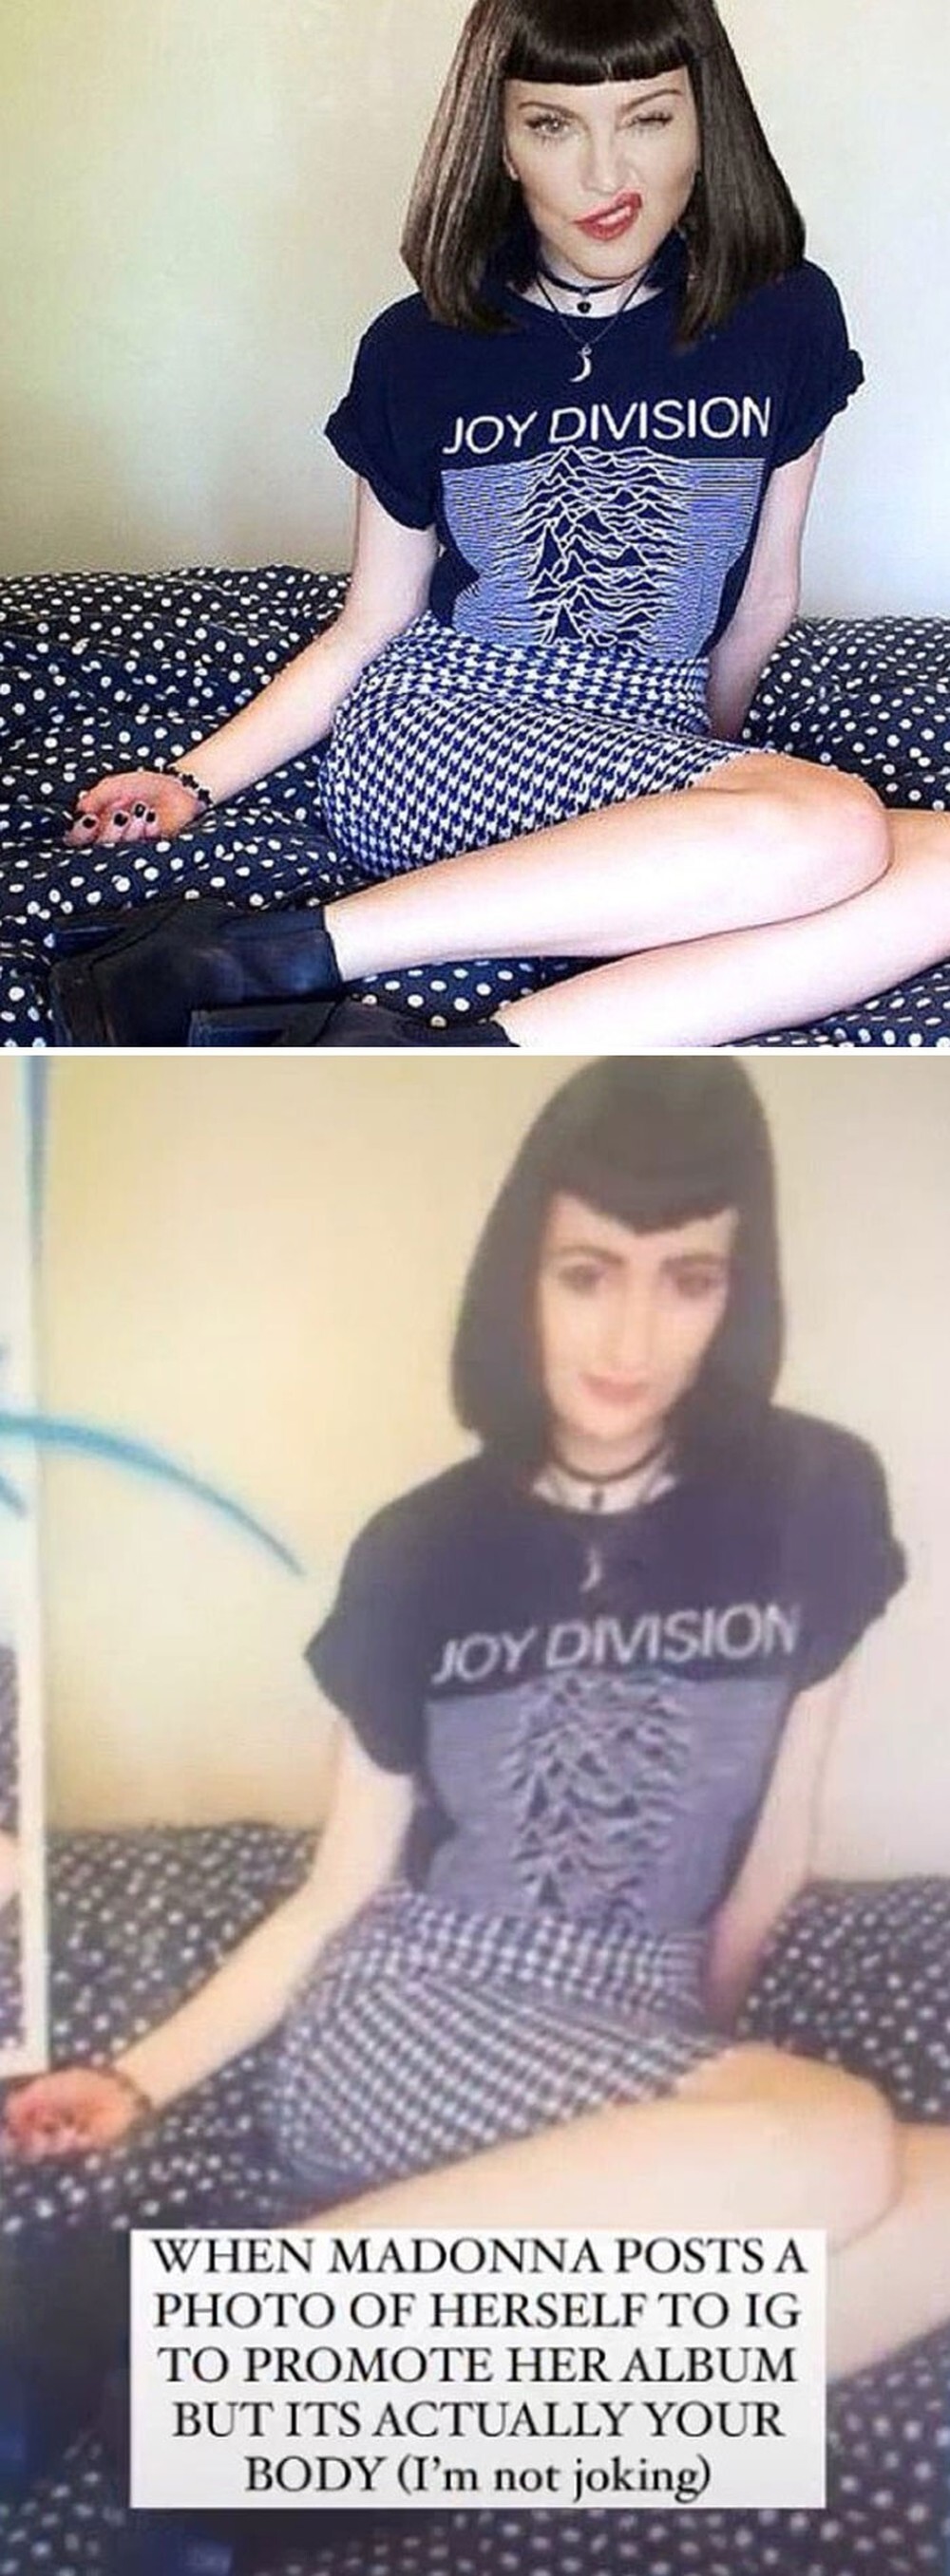 2. Мадонна попалась на том, что прифотошопила свою голову на тело случайной девушки из интернета